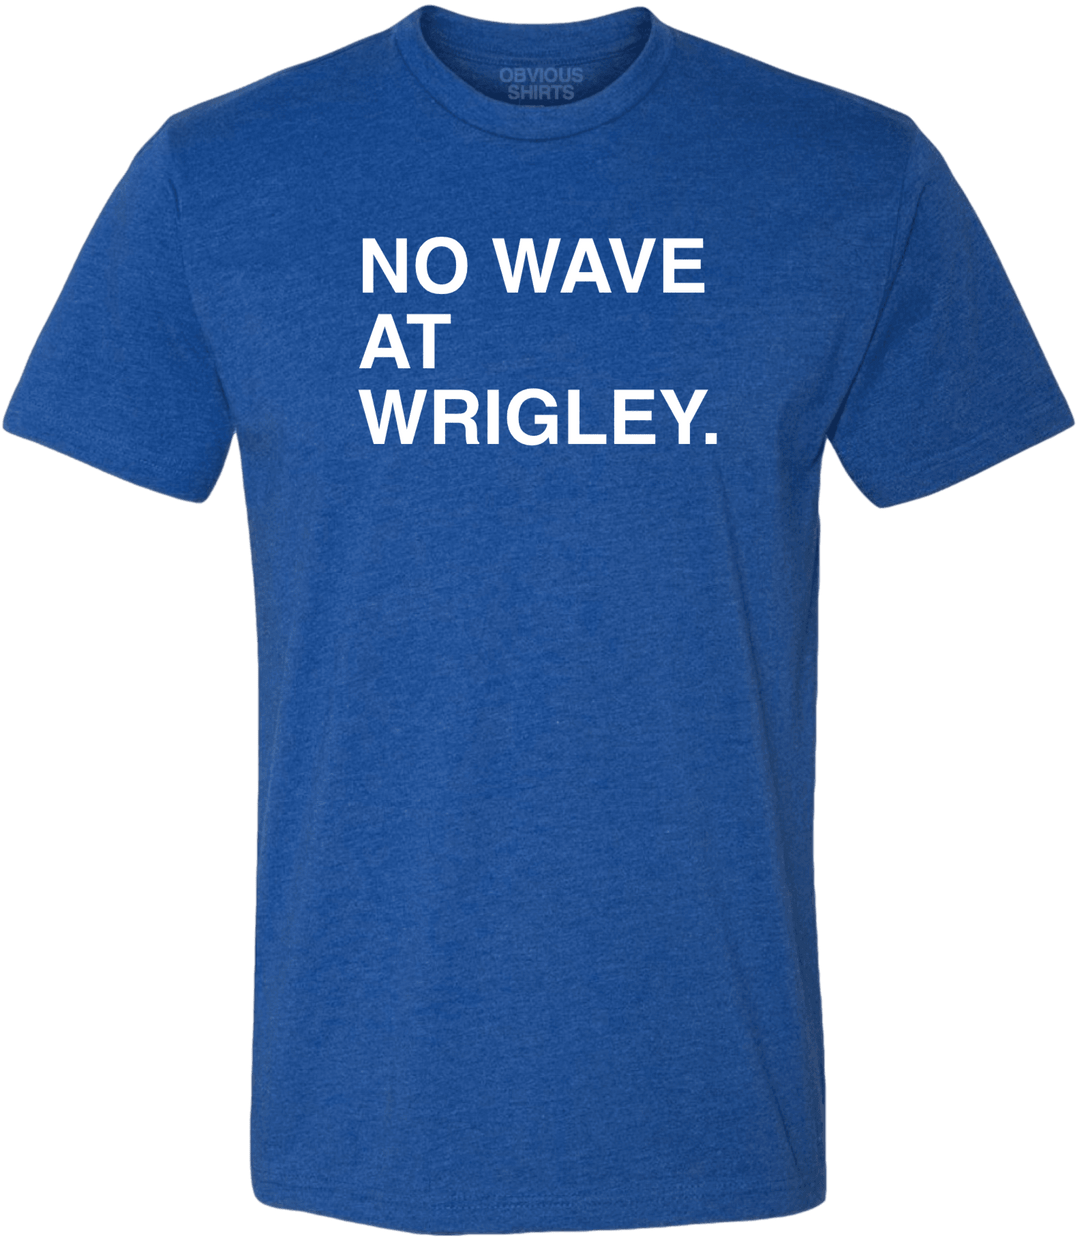 NO WAVE AT WRIGLEY. - OBVIOUS SHIRTS.